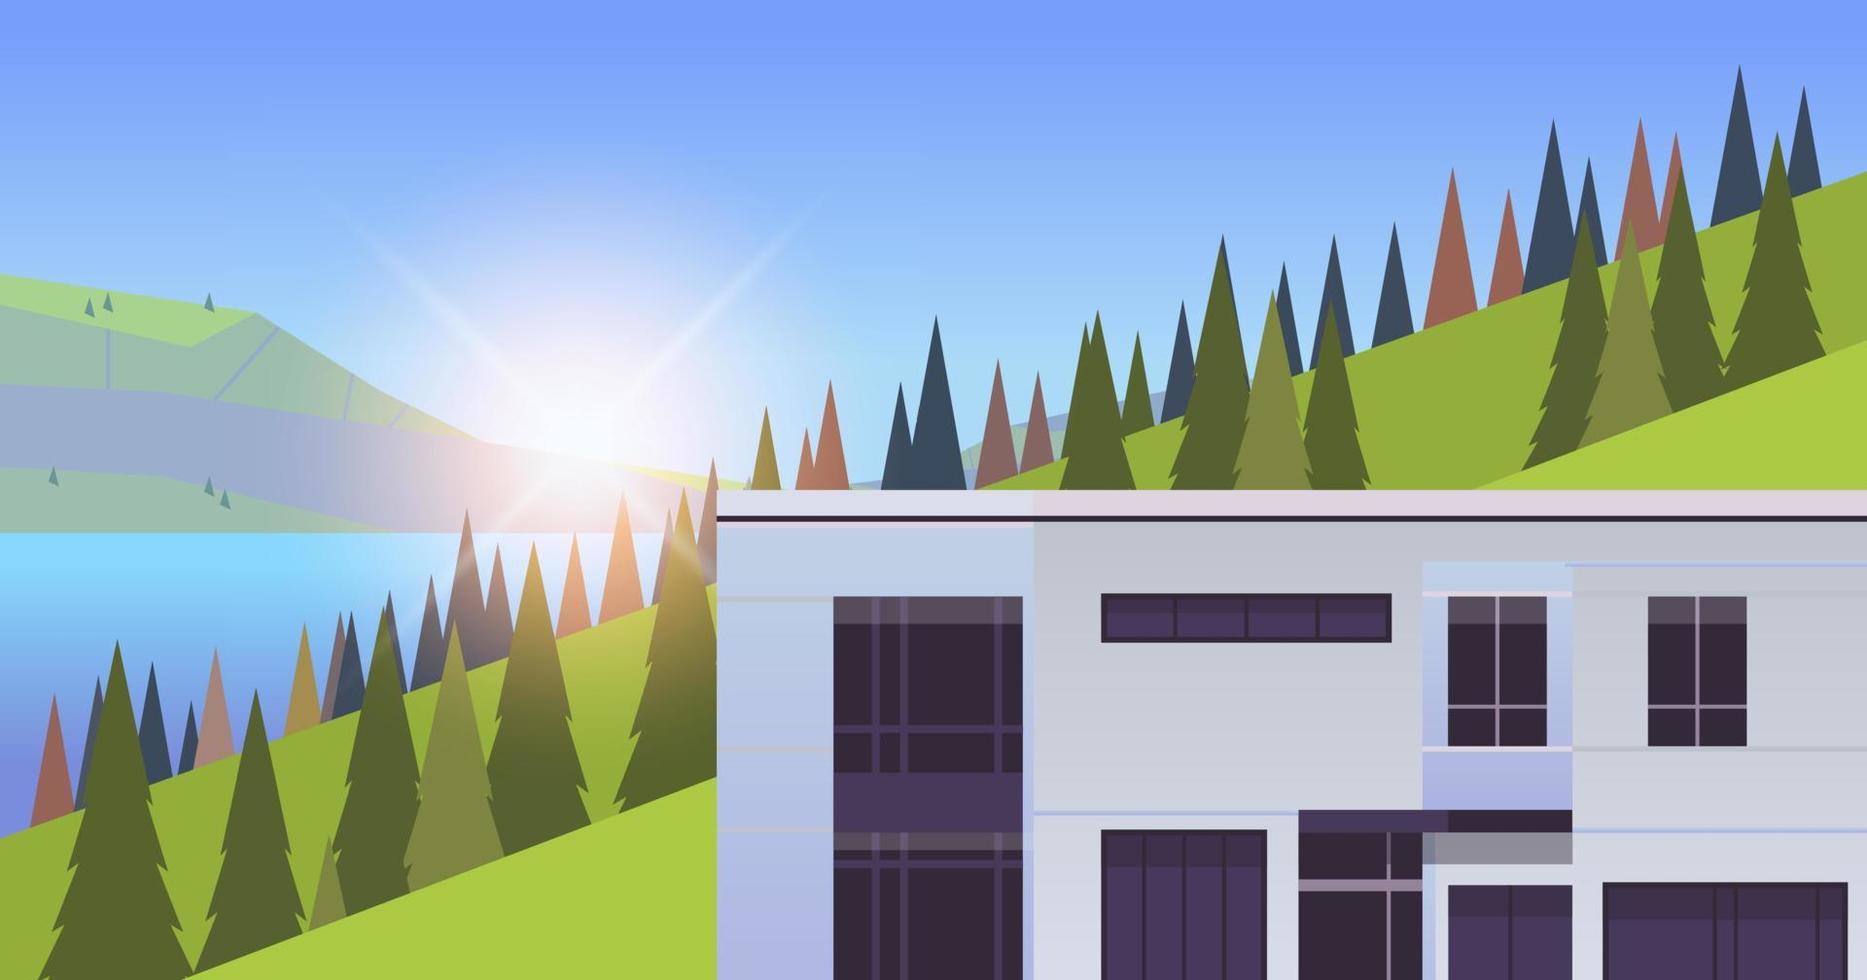 área de casas residenciales de montañas y concepto de paisaje de temporada de verano ilustración vectorial plana. vector